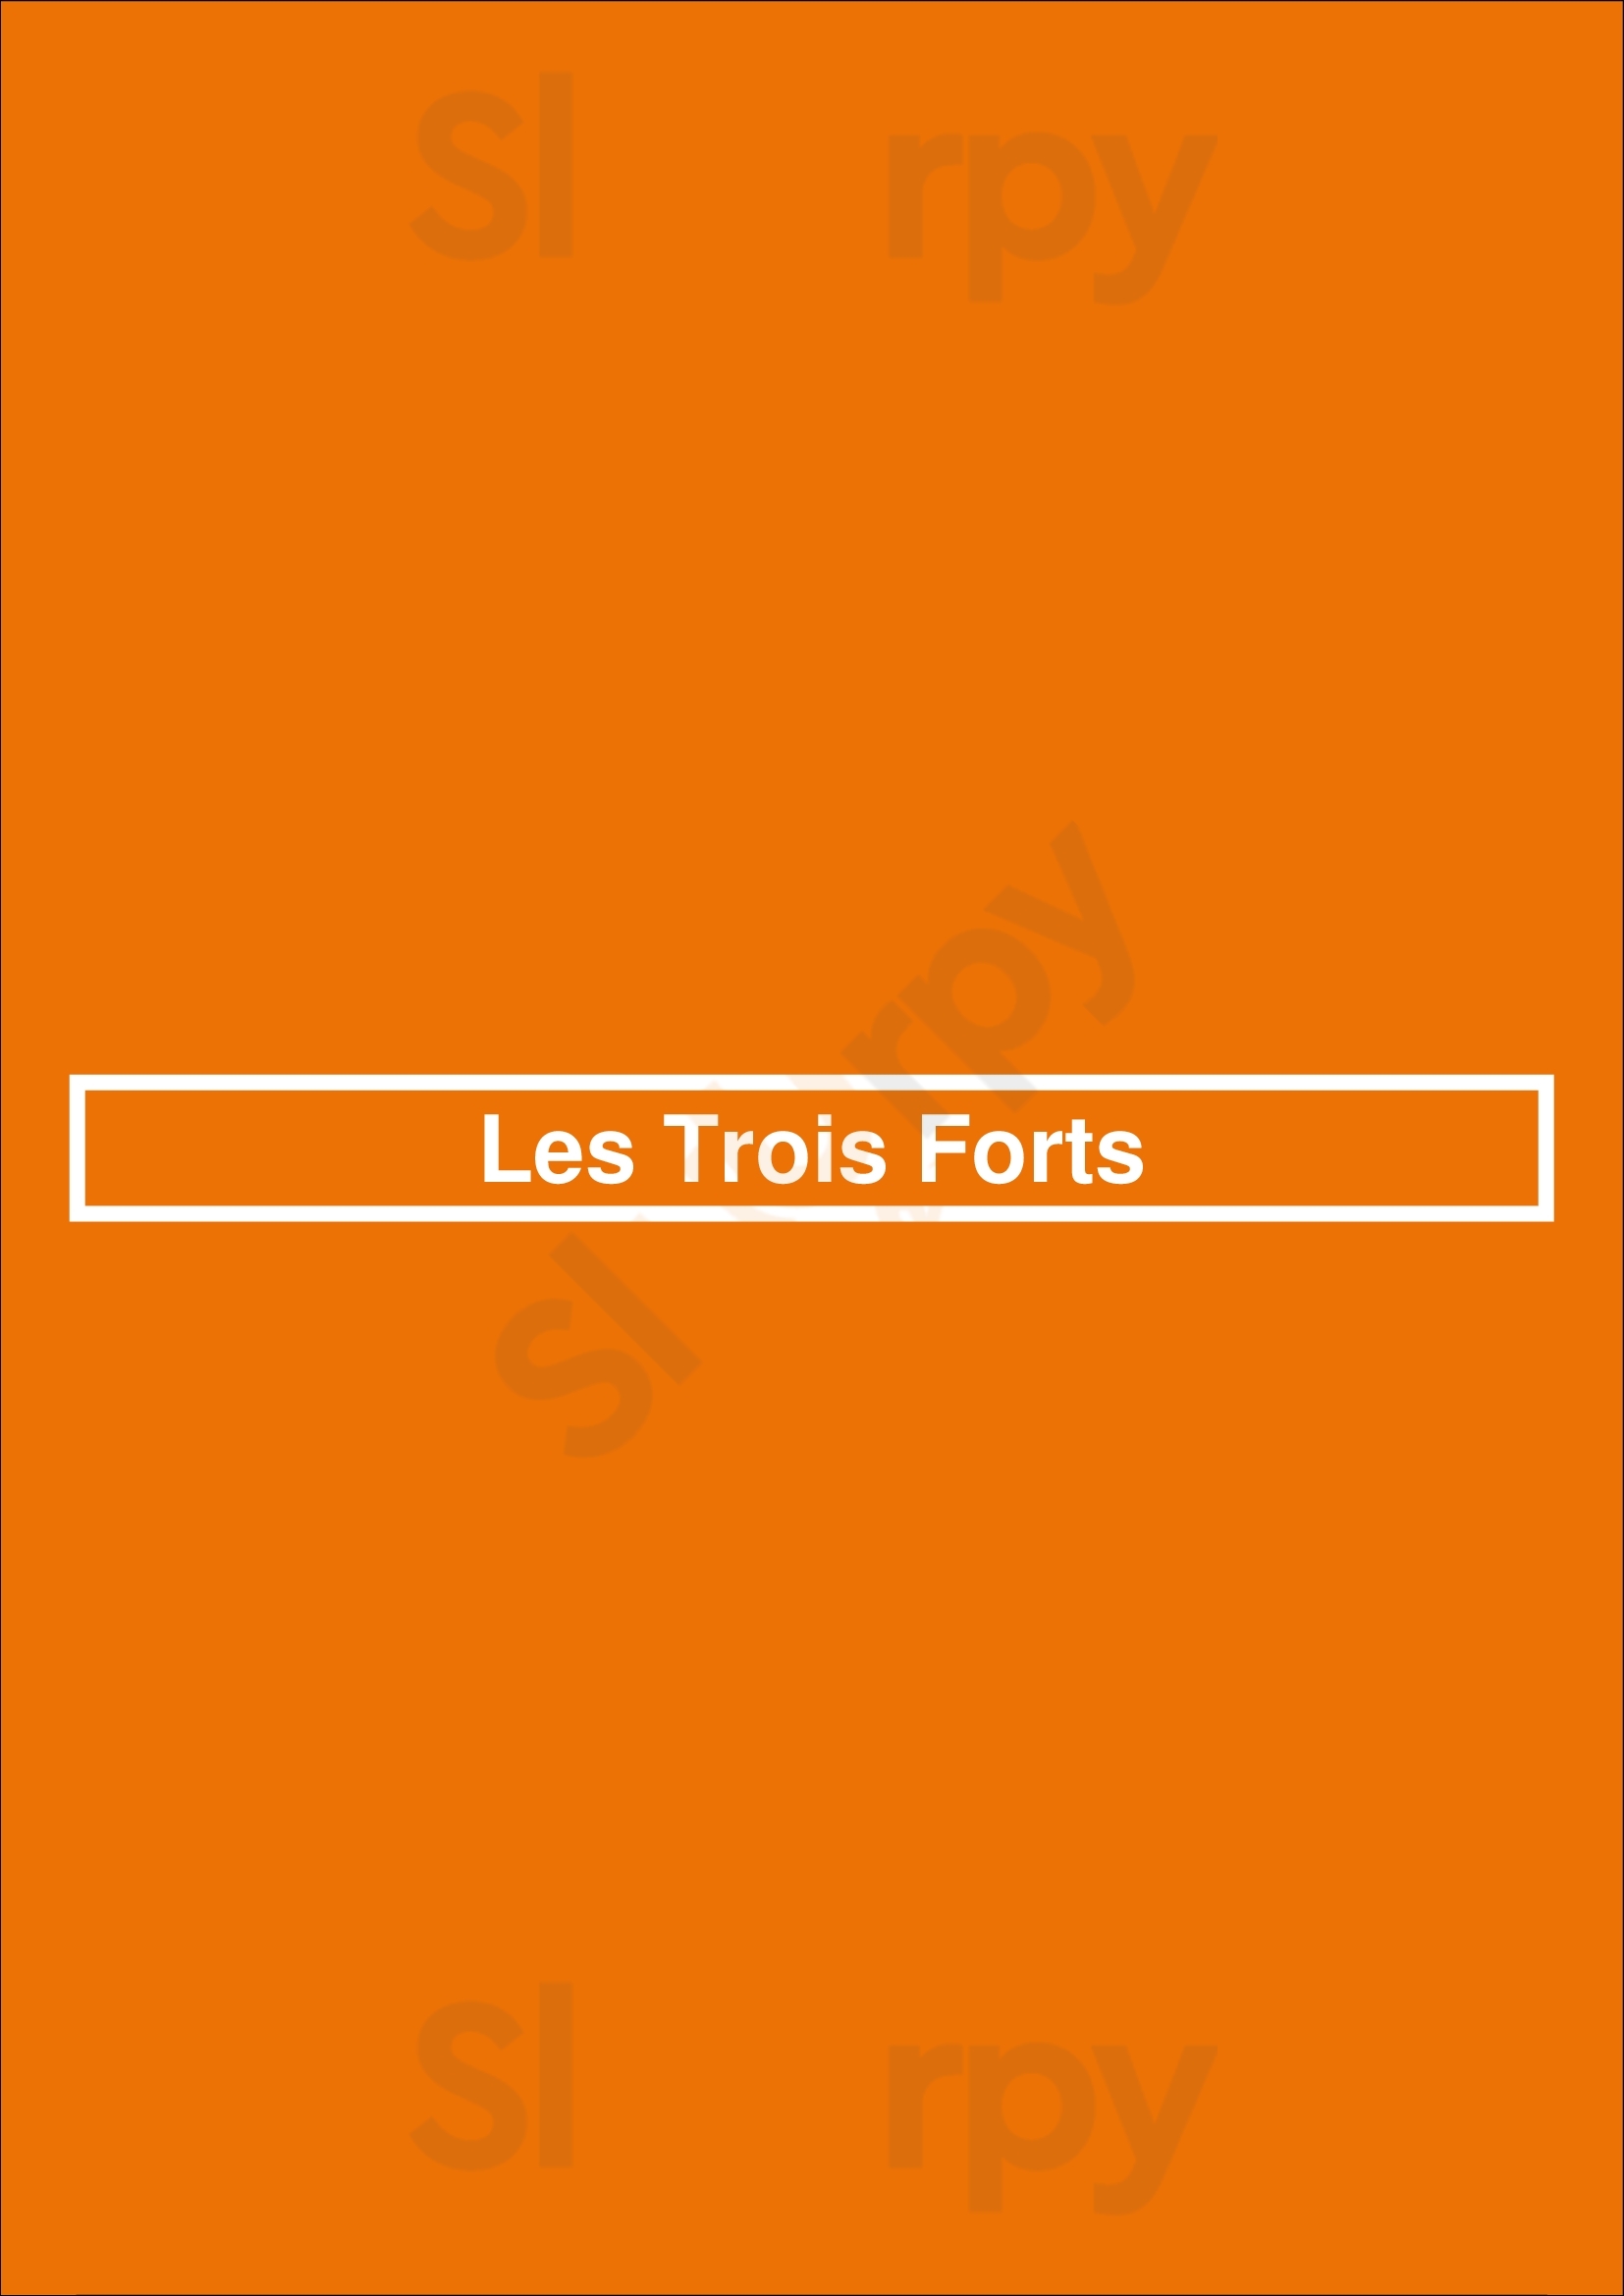 Les Trois Forts Marseille Menu - 1